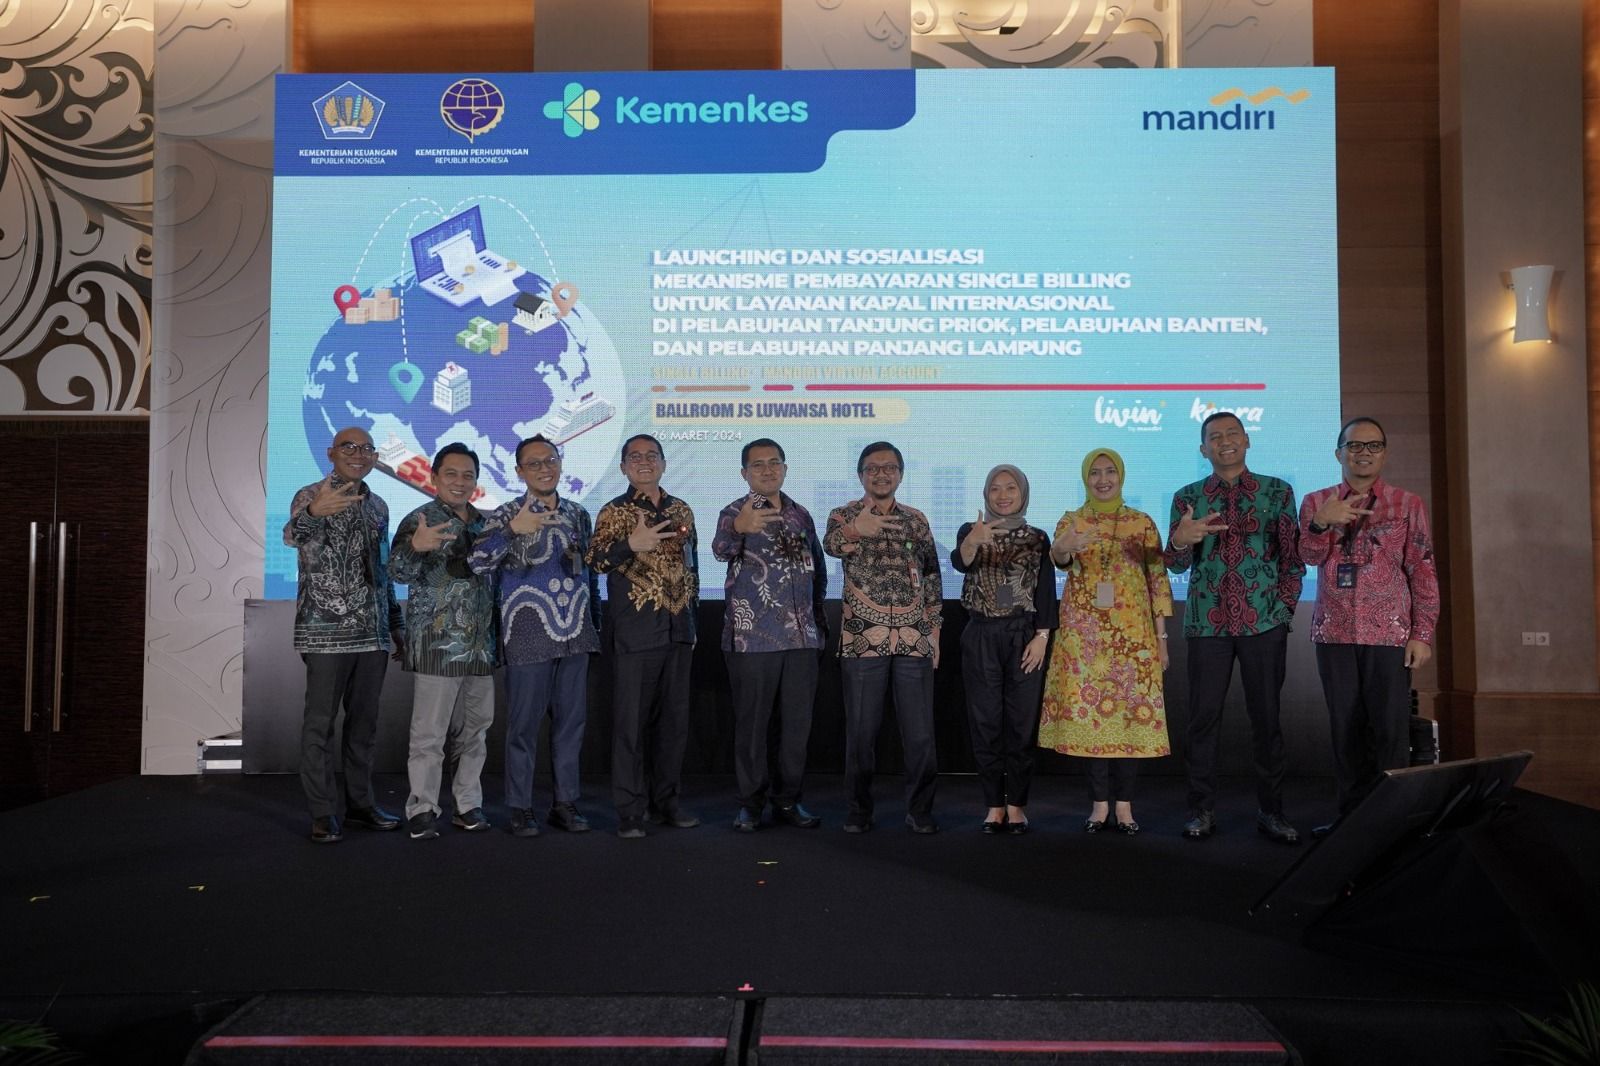 Tiga kementerian berkolaborasi bersama Bank Mandiri mendesain dan mengimplementasikan single billing di pelabuhan Tanjung Priok, Pelabuhan Banten, dan Pelabuhan Panjang Lampung.